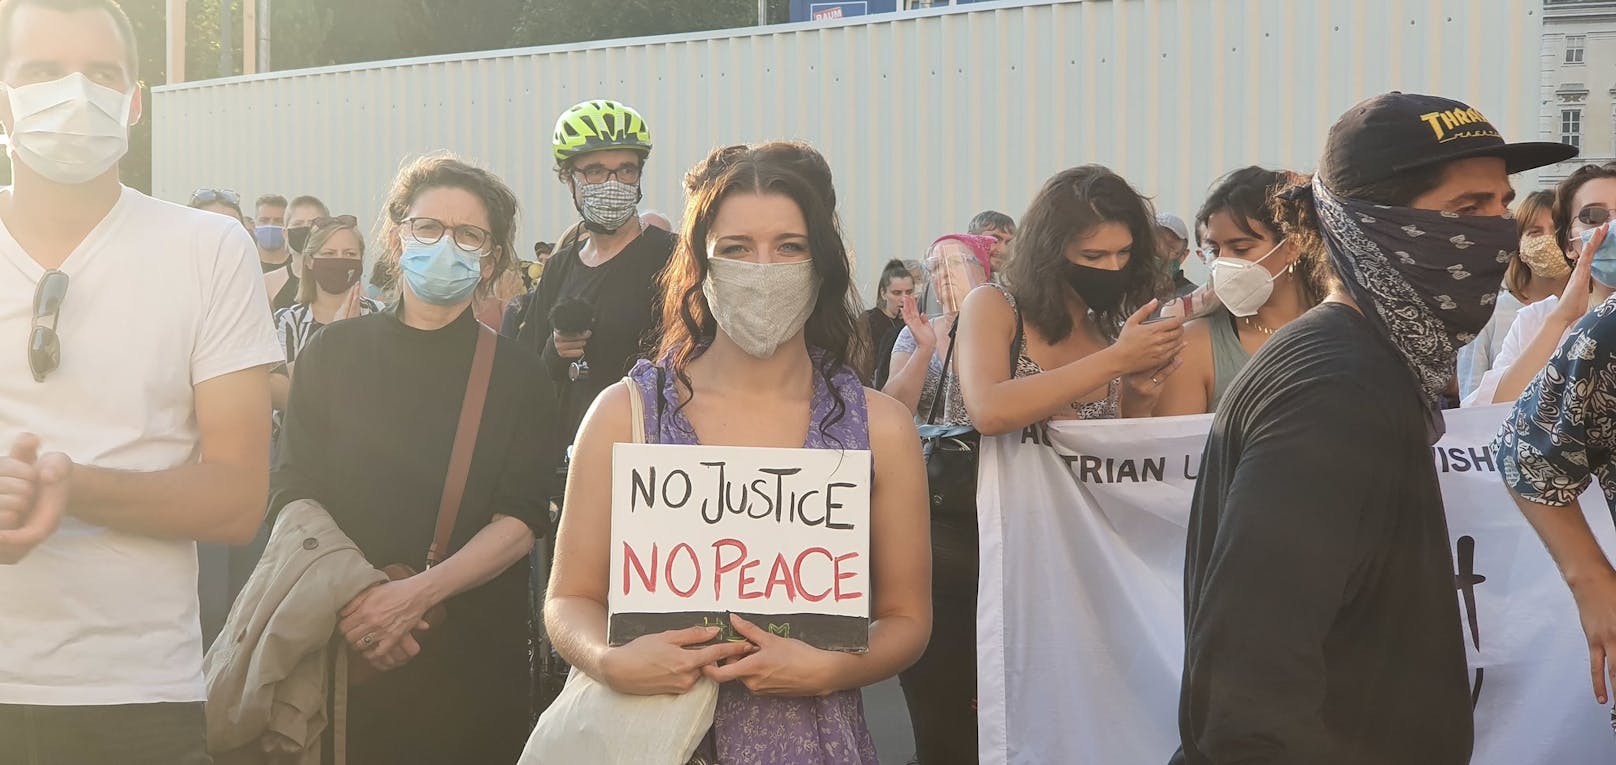 "Ohne Gerechtigkeit gibt es keinen Frieden", steht auf dem Schild.